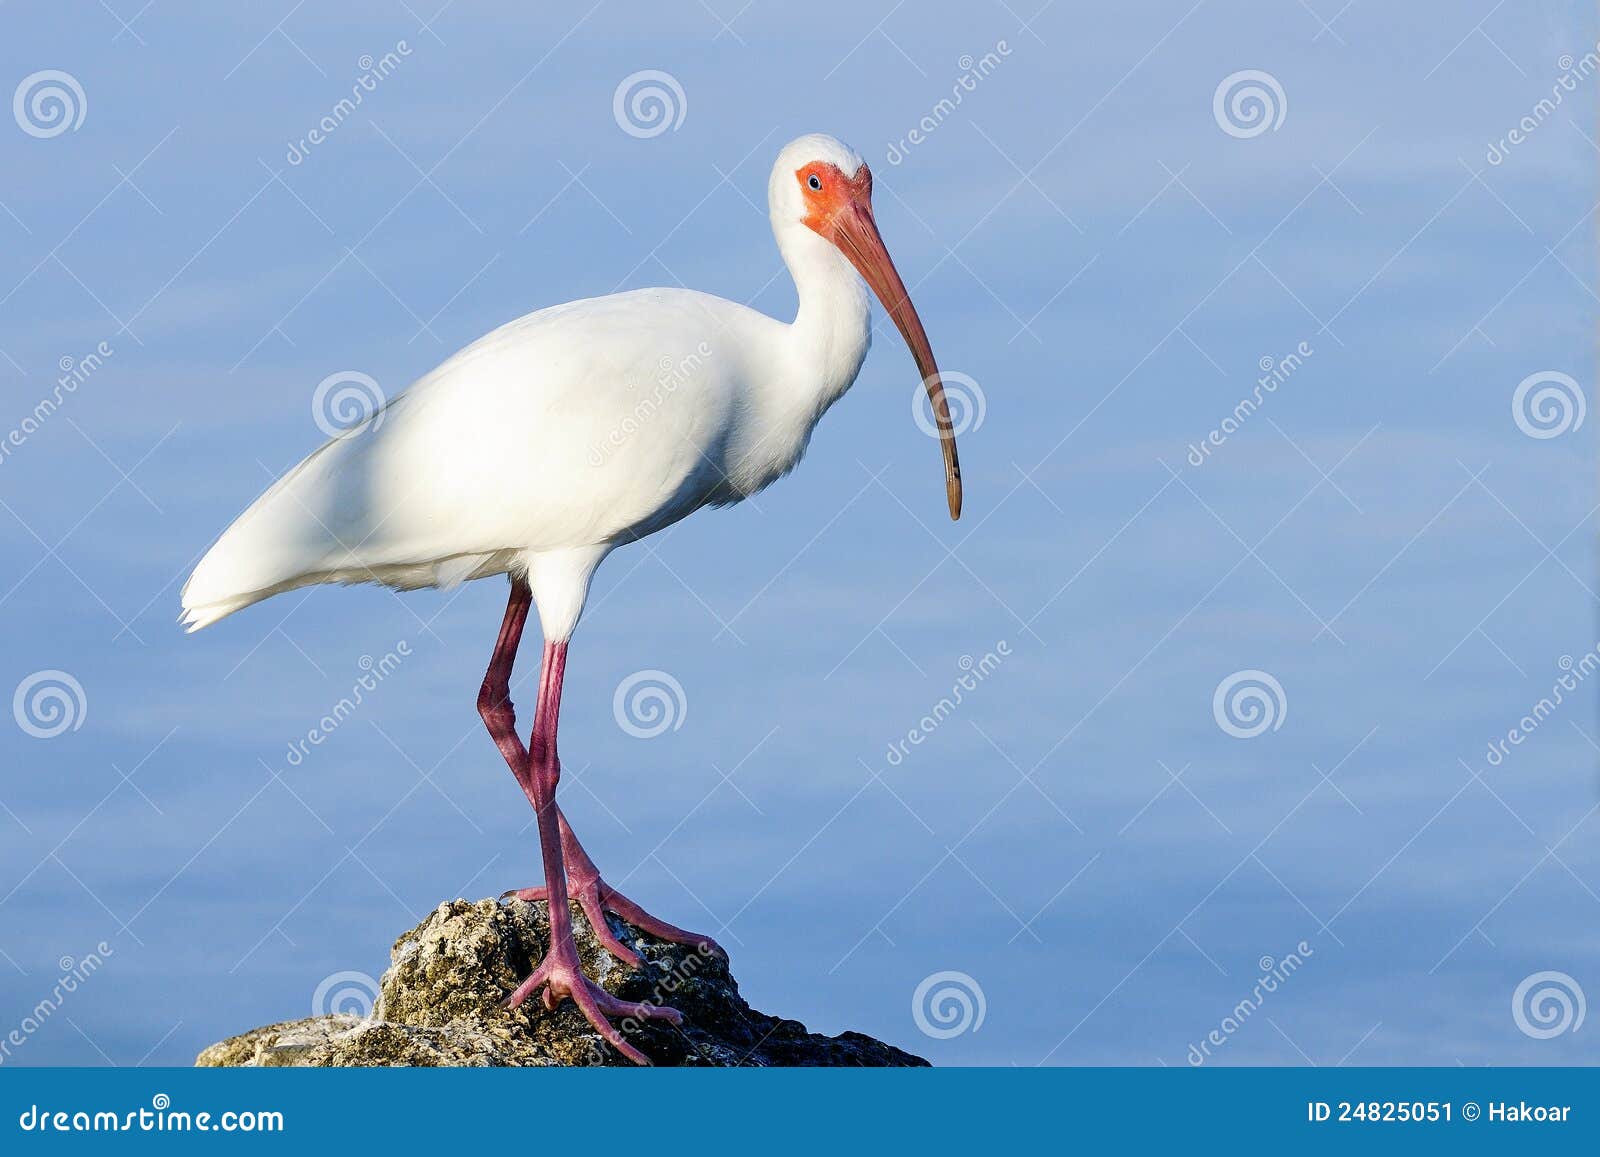 american white ibis, eudocimus albus